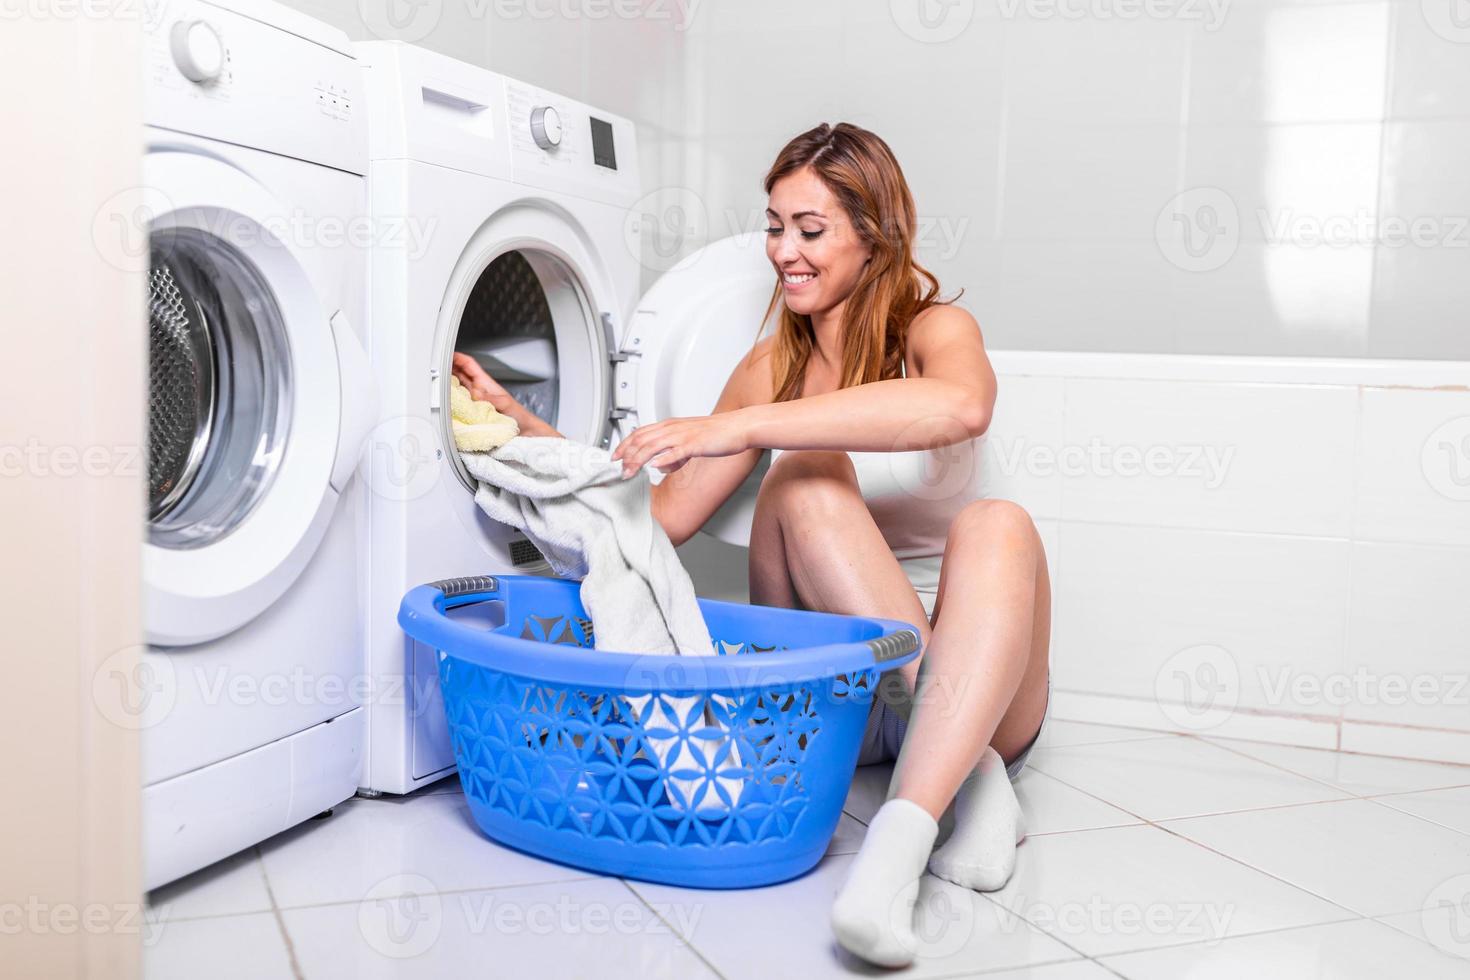 junge frau, die zu hause wäsche aus der waschmaschine nimmt. junge frau zu hause, macht hausarbeiten und hauswirtschaft, sammelt kleidung und kleider aus wäschetrockner, trockner foto